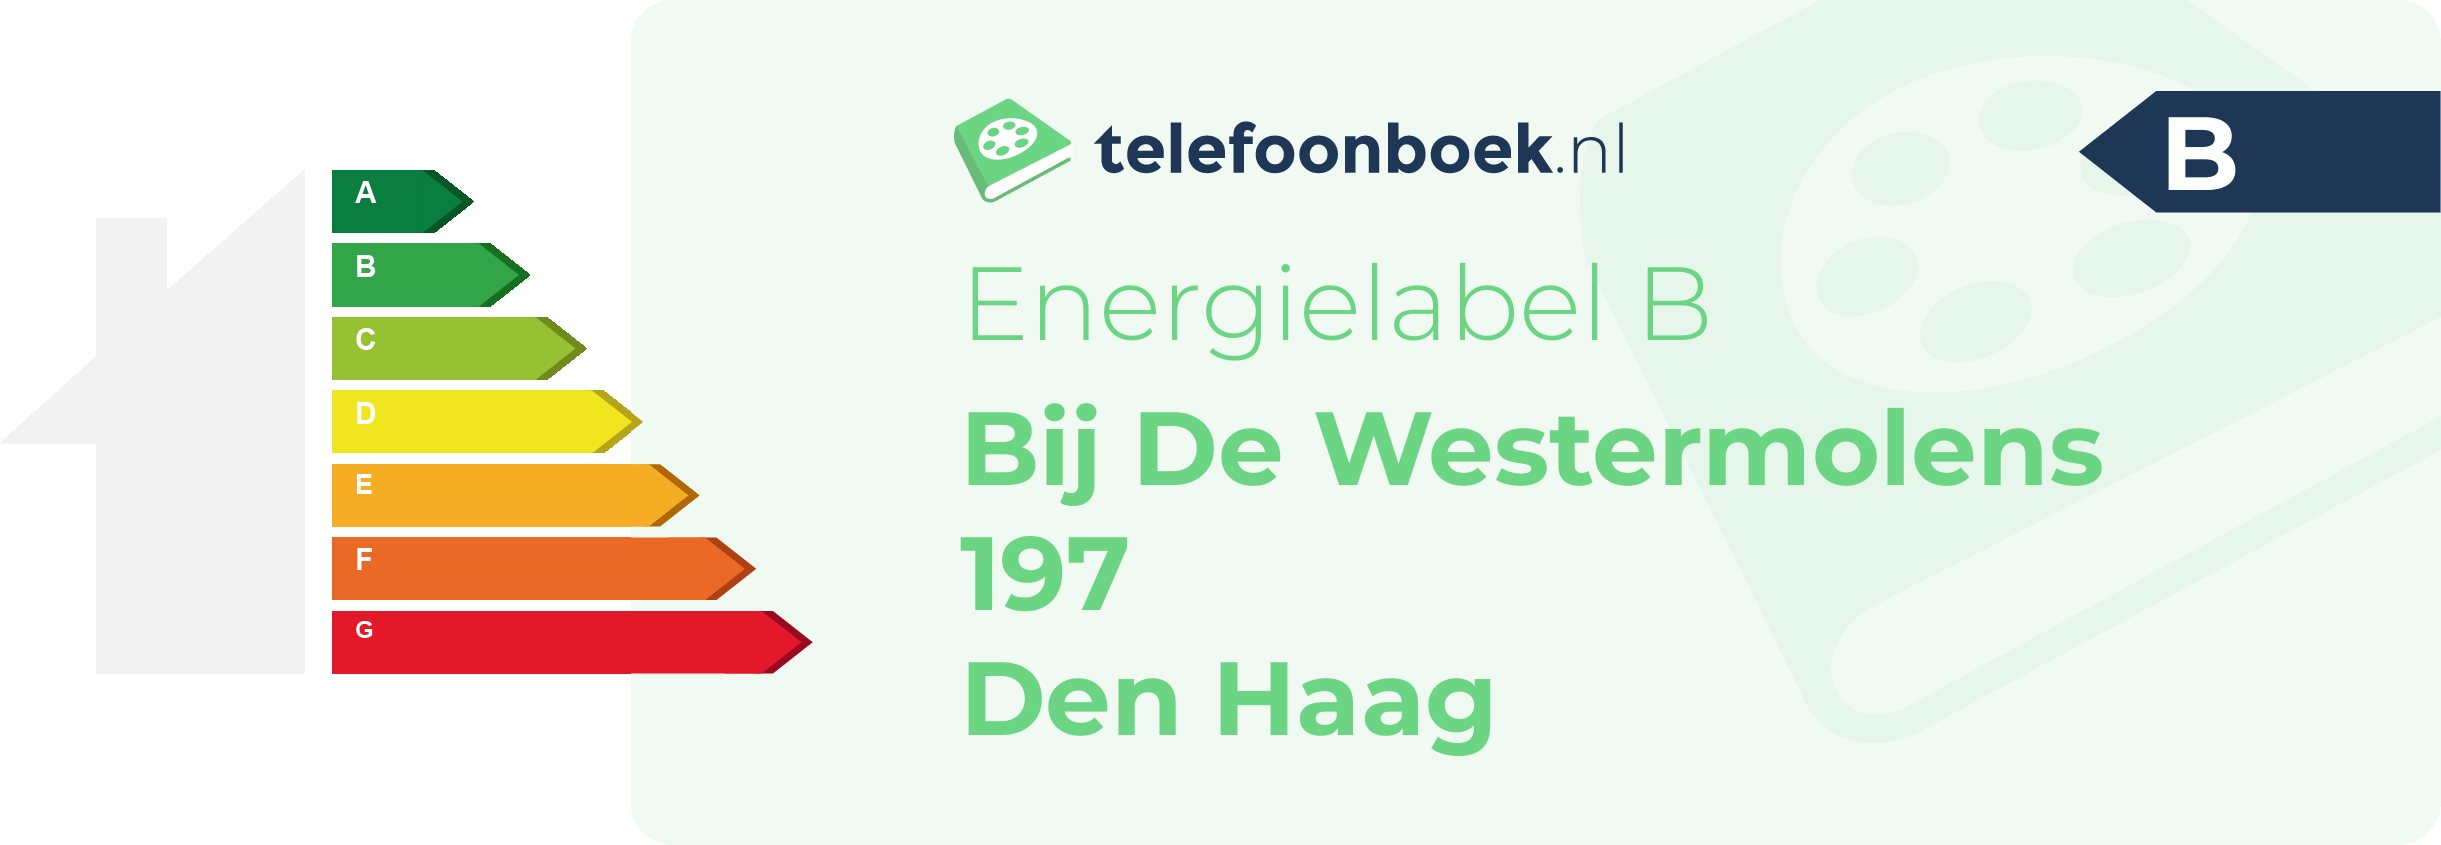 Energielabel Bij De Westermolens 197 Den Haag